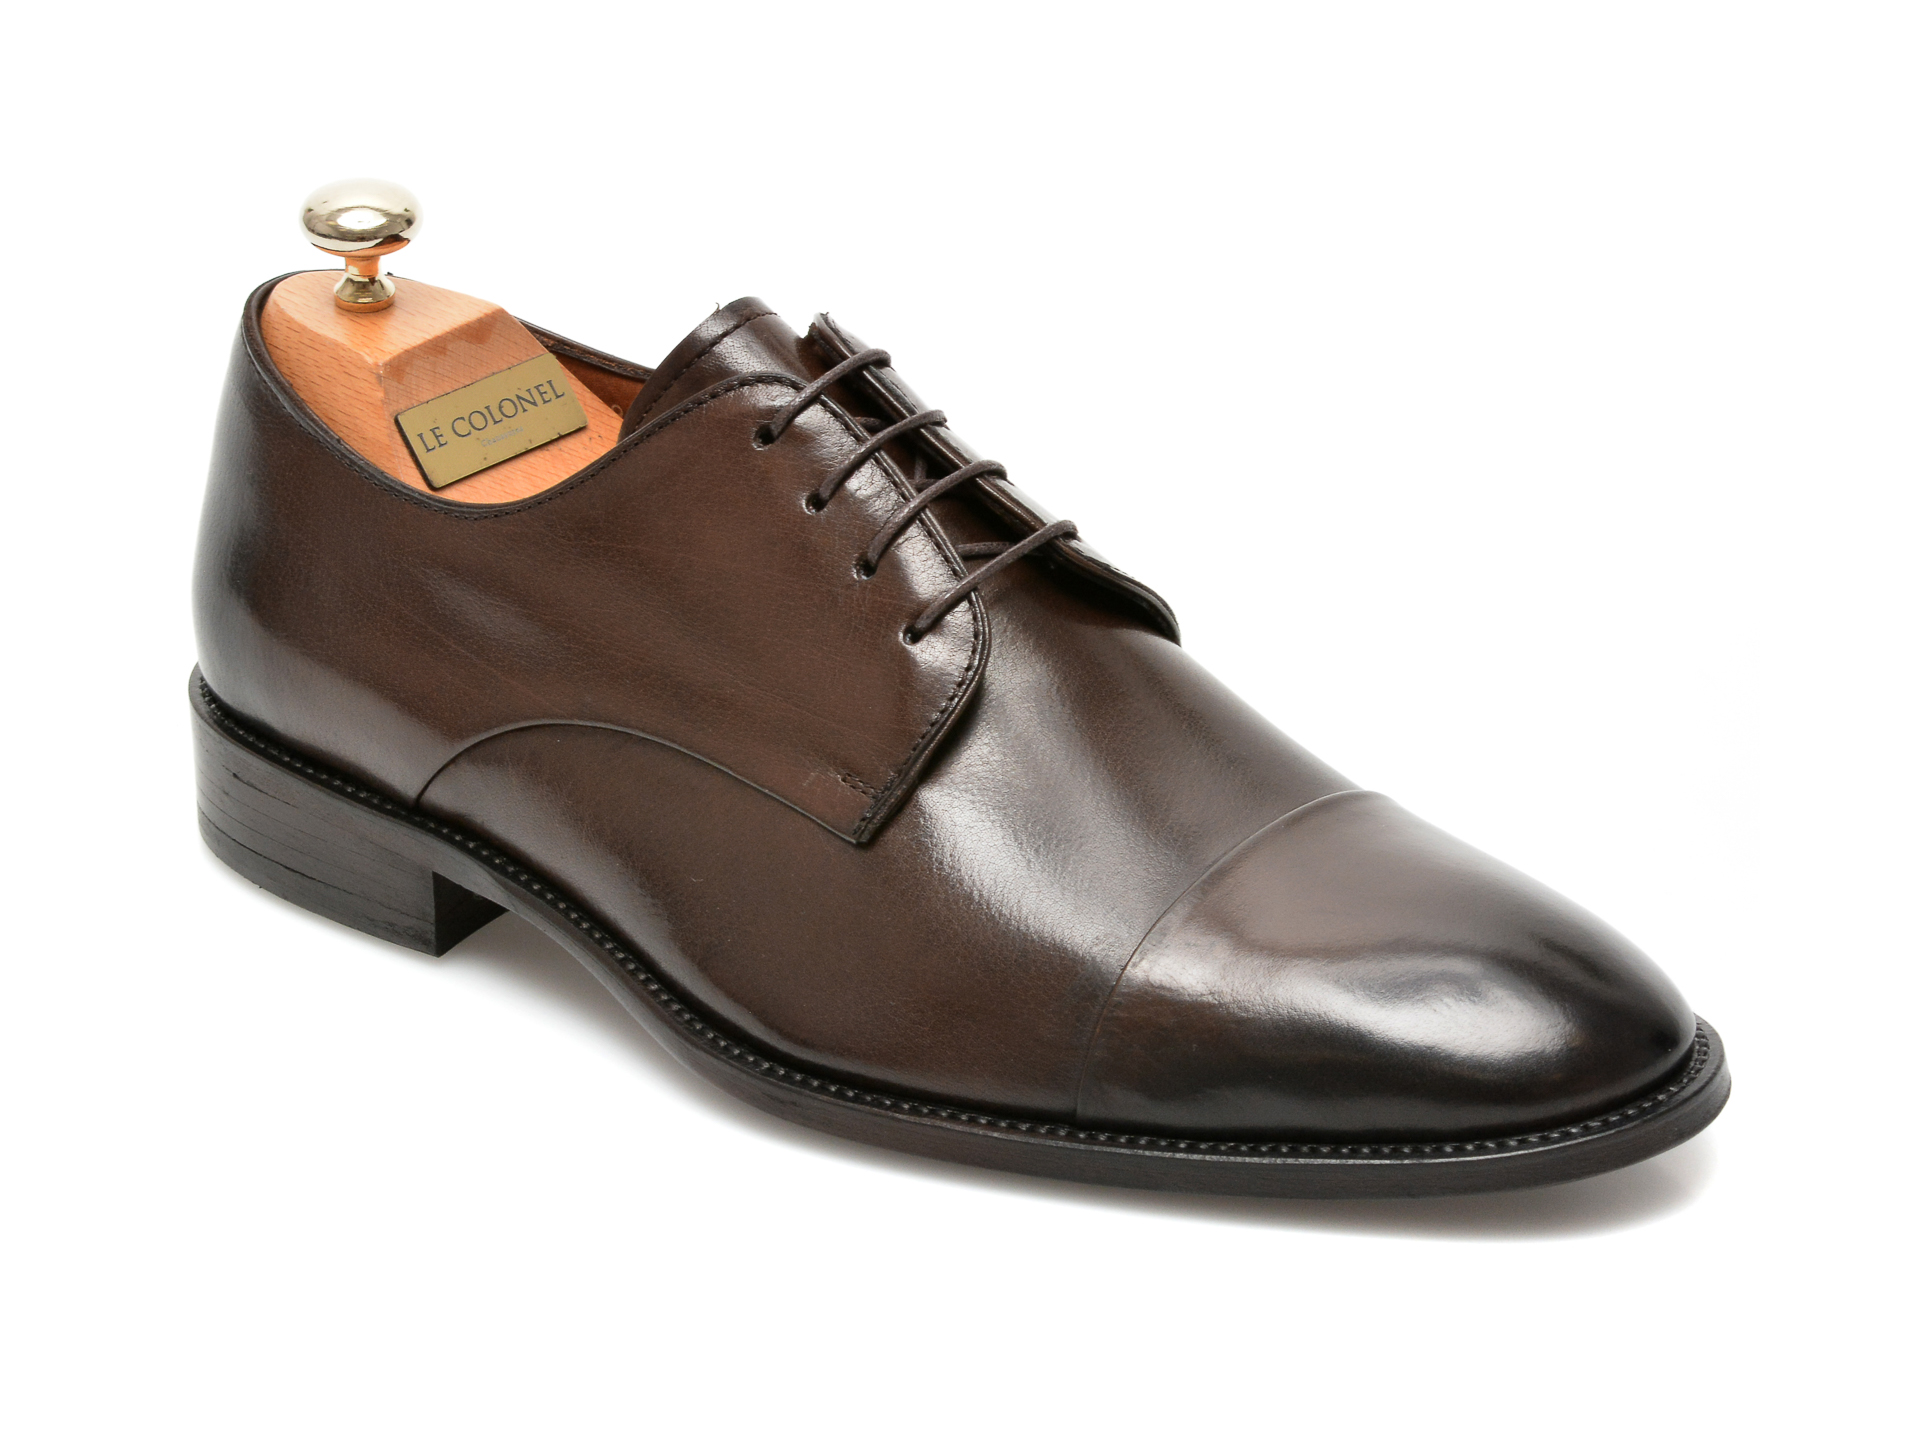 Pantofi LE COLONEL maro, 49809, din piele naturala imagine reduceri black friday 2021 Le Colonel